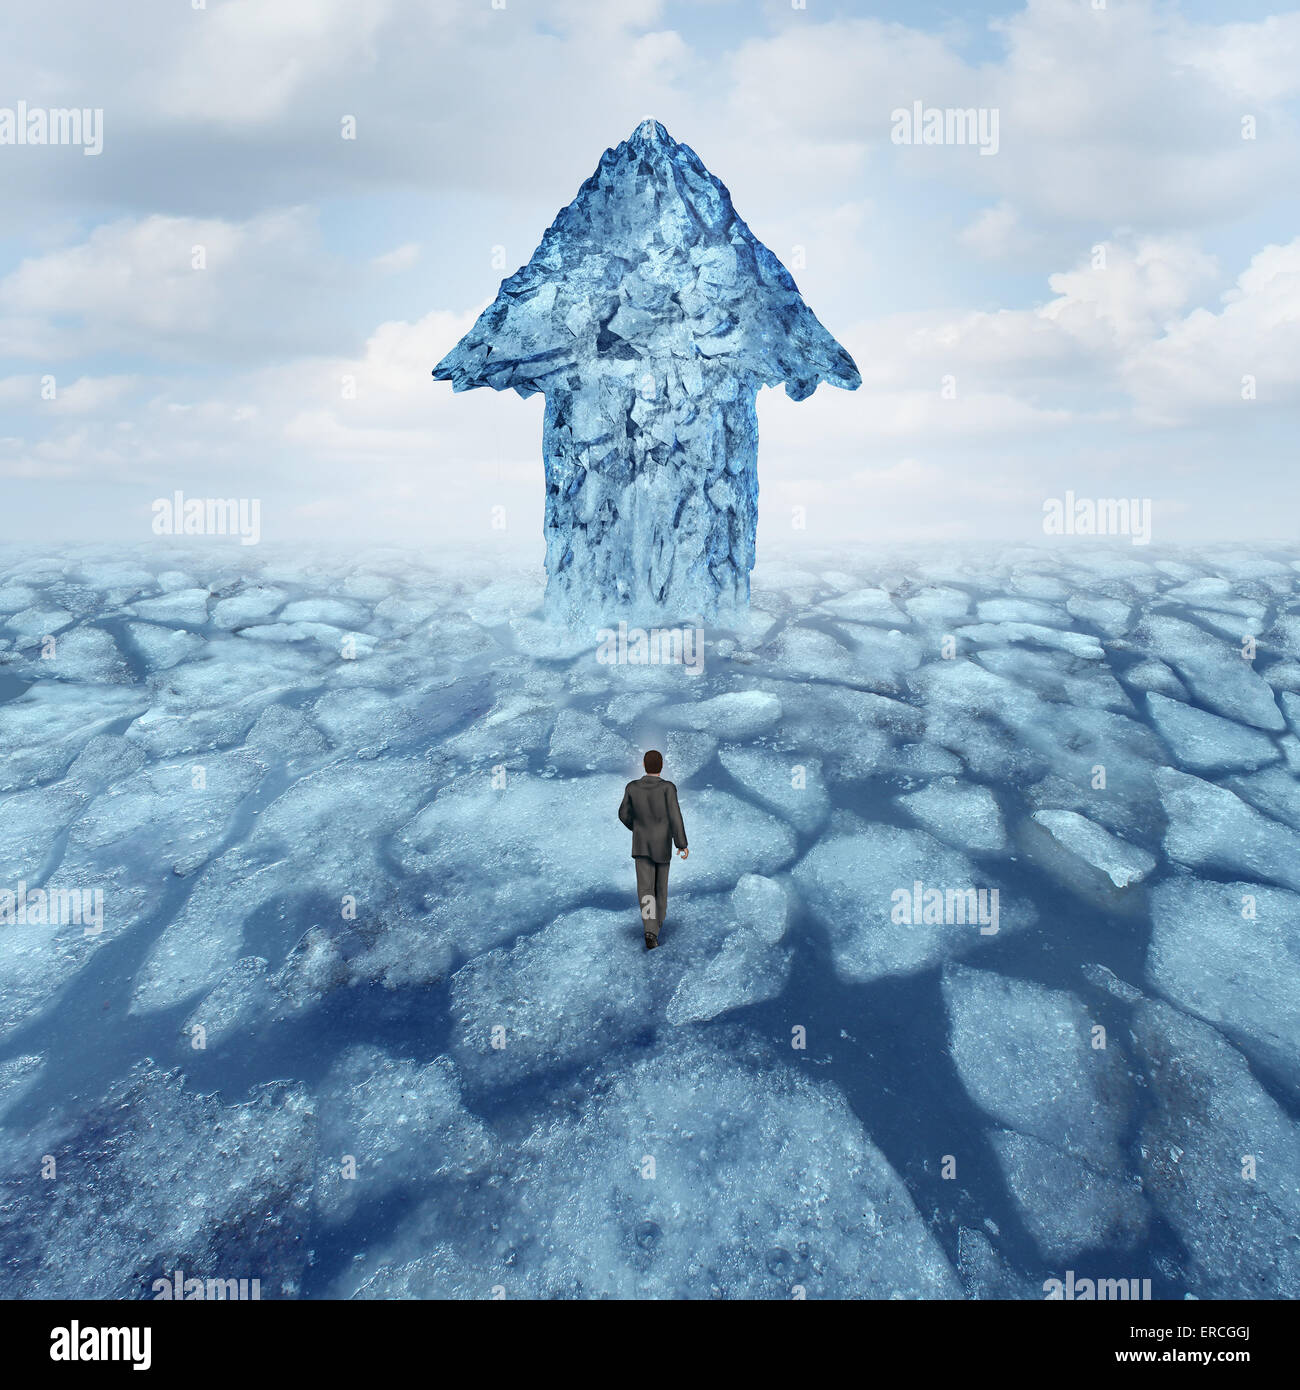 Voyage de succès concept comme un businessman walking on broken glace congelée avec un iceberg en forme d'une flèche comme une métaphore de danger risque et opportunité. Banque D'Images